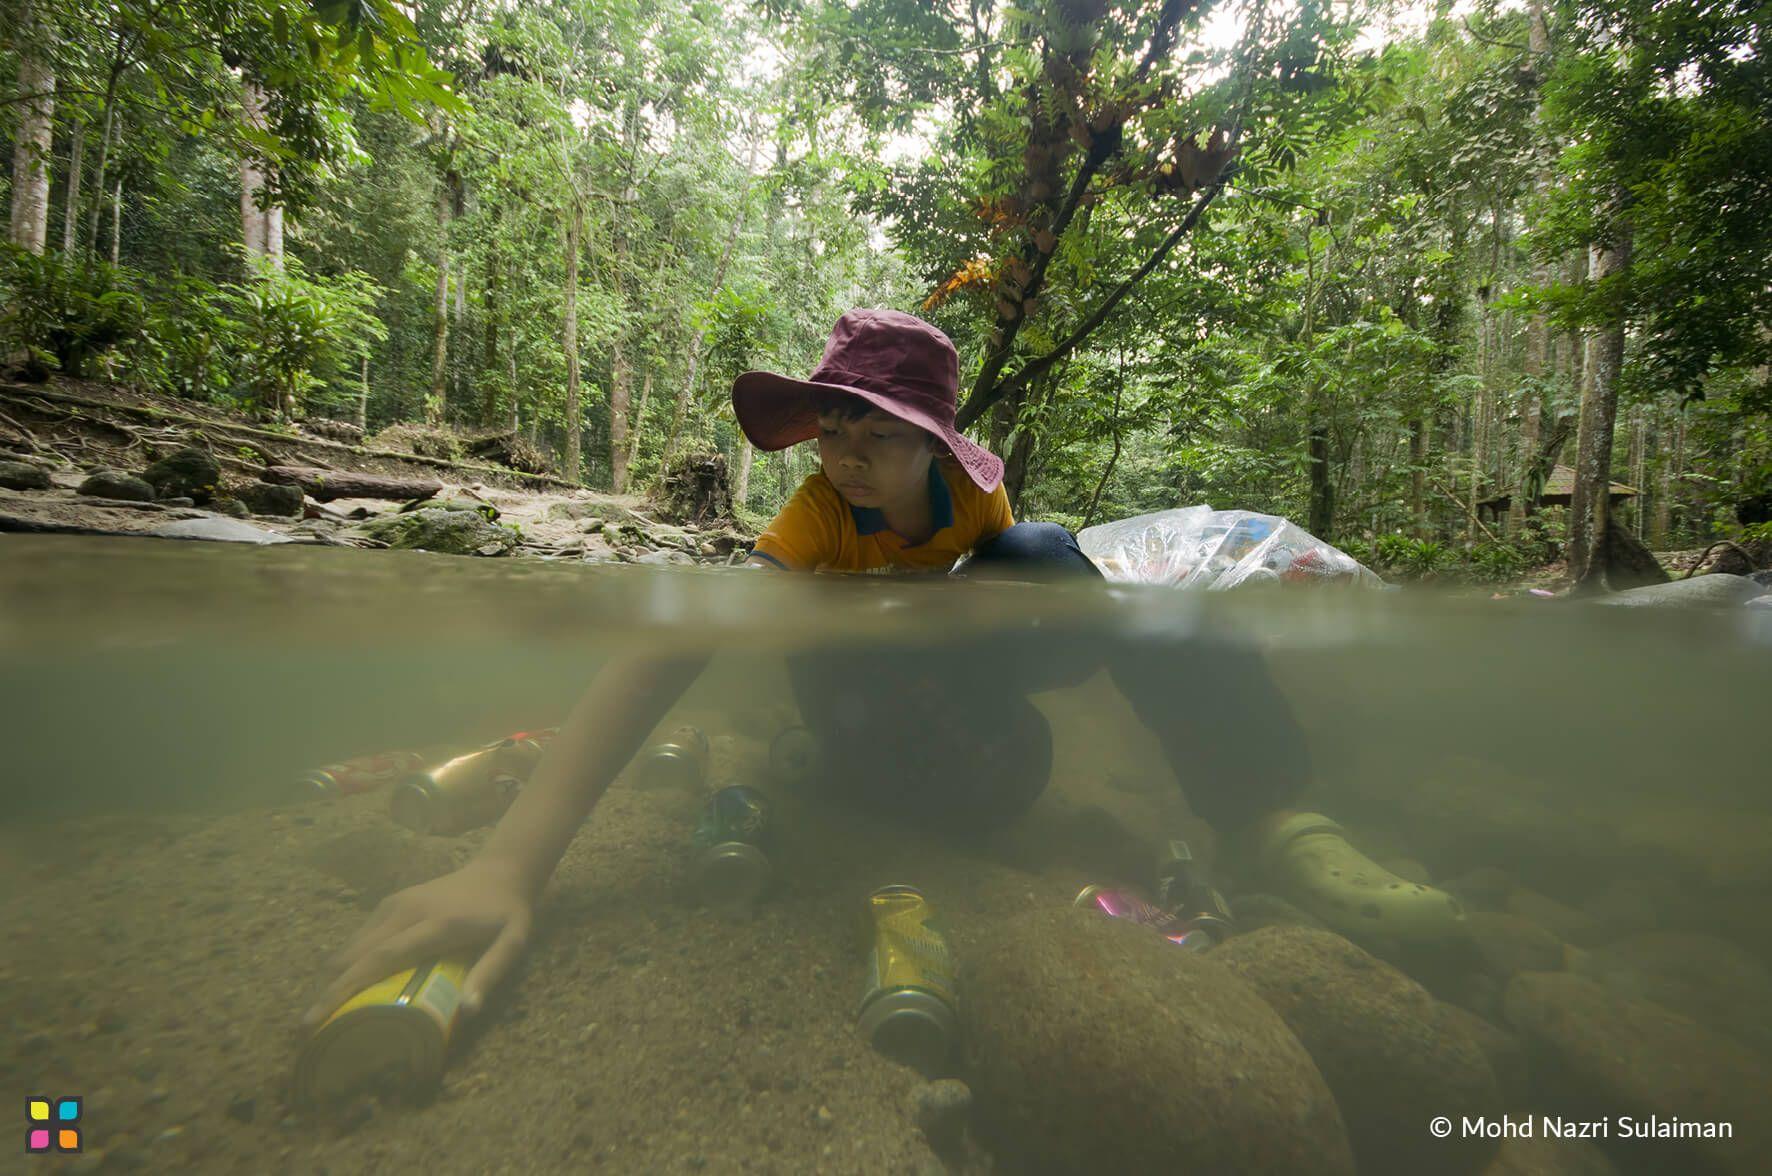 ولد يجمع الزجاجات والعلب من النهر في ماليزيا للمساعدة في تنظيف البيئة.
اسم المصور: محمد نزري سليمان المكان: ماليزيا